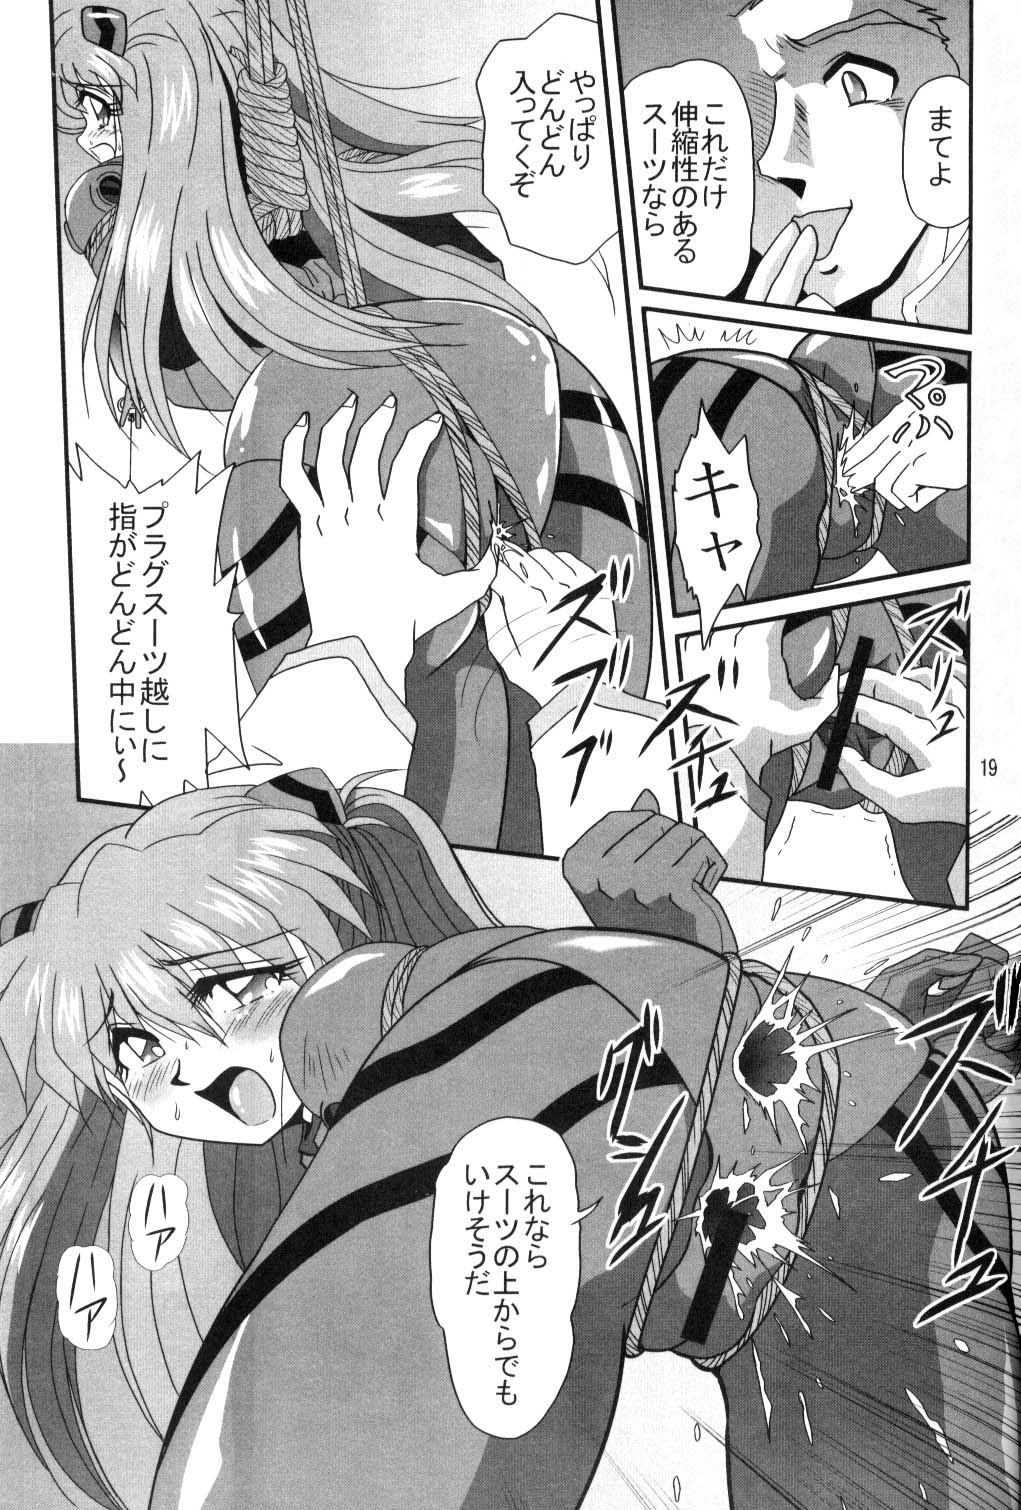 [Thirty Saver Street 2D Shooting (Maki Hideto, Sawara Kazumitsu, Yonige-ya No Kyou)] Second Uchuu Keikaku (Neon Genesis Evangelion) page 18 full